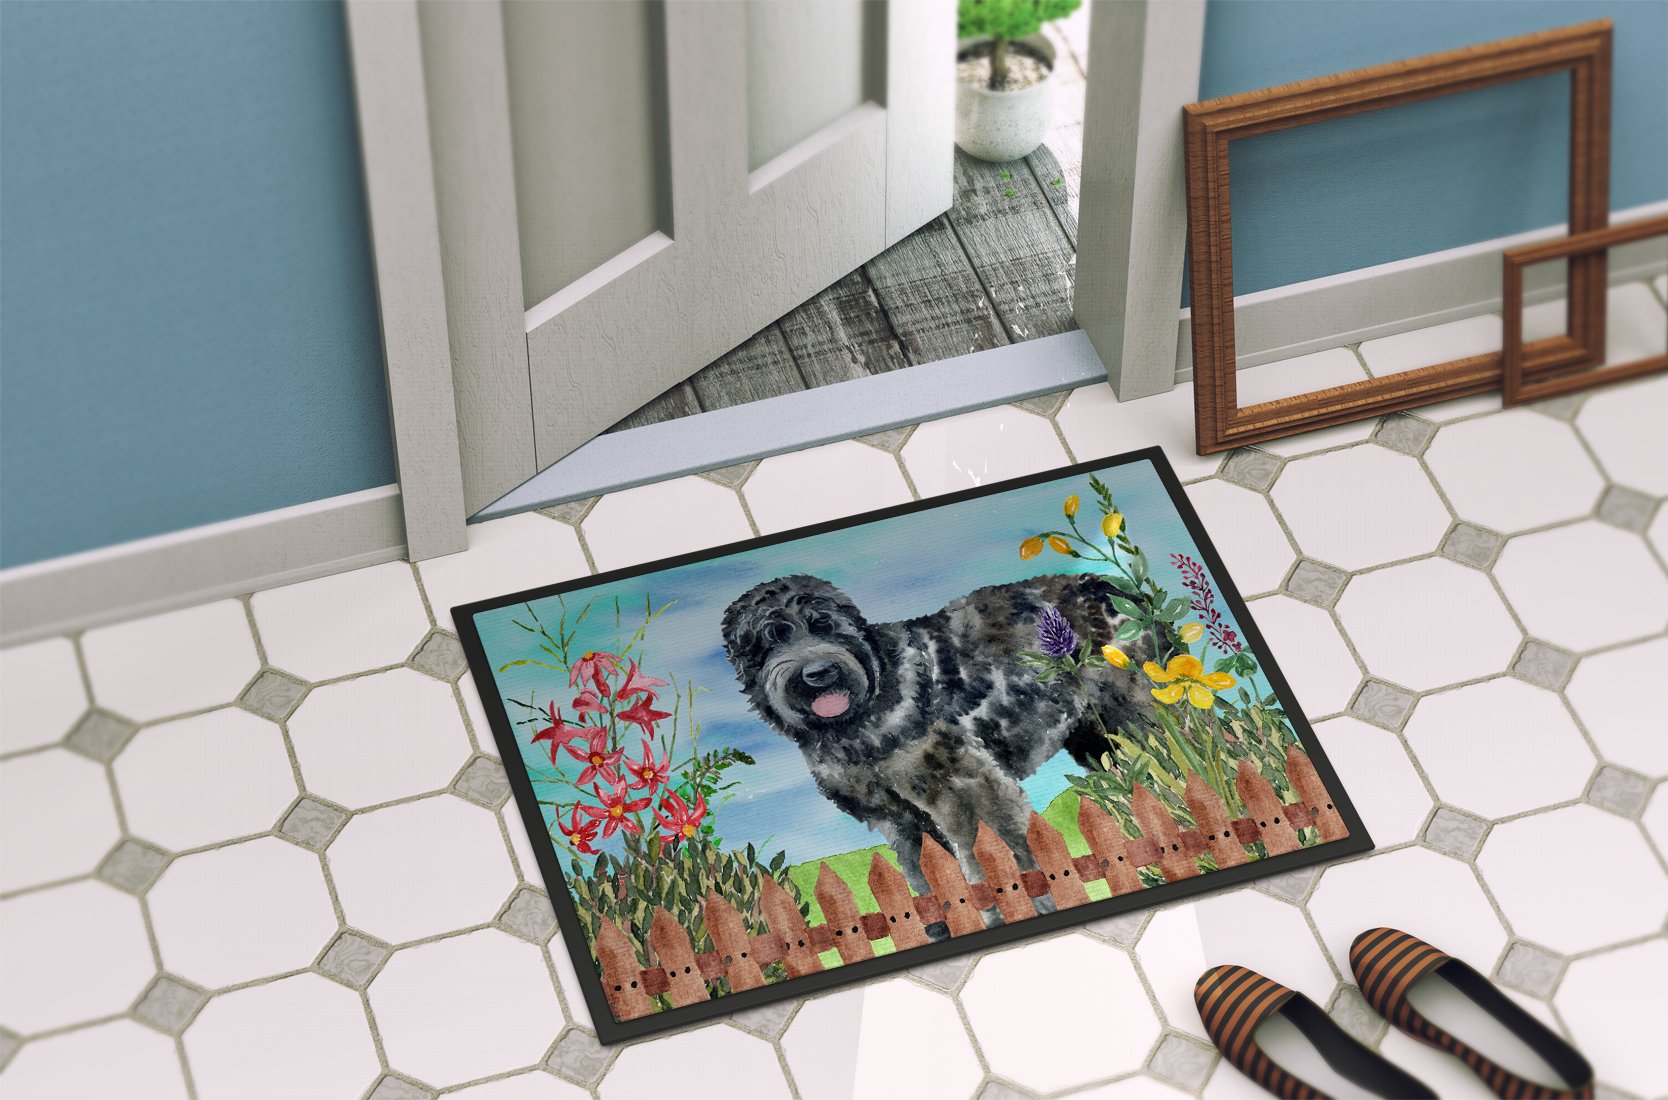 Black Russian Terrier Spring Indoor or Outdoor Mat 24x36 CK1239JMAT by Caroline's Treasures